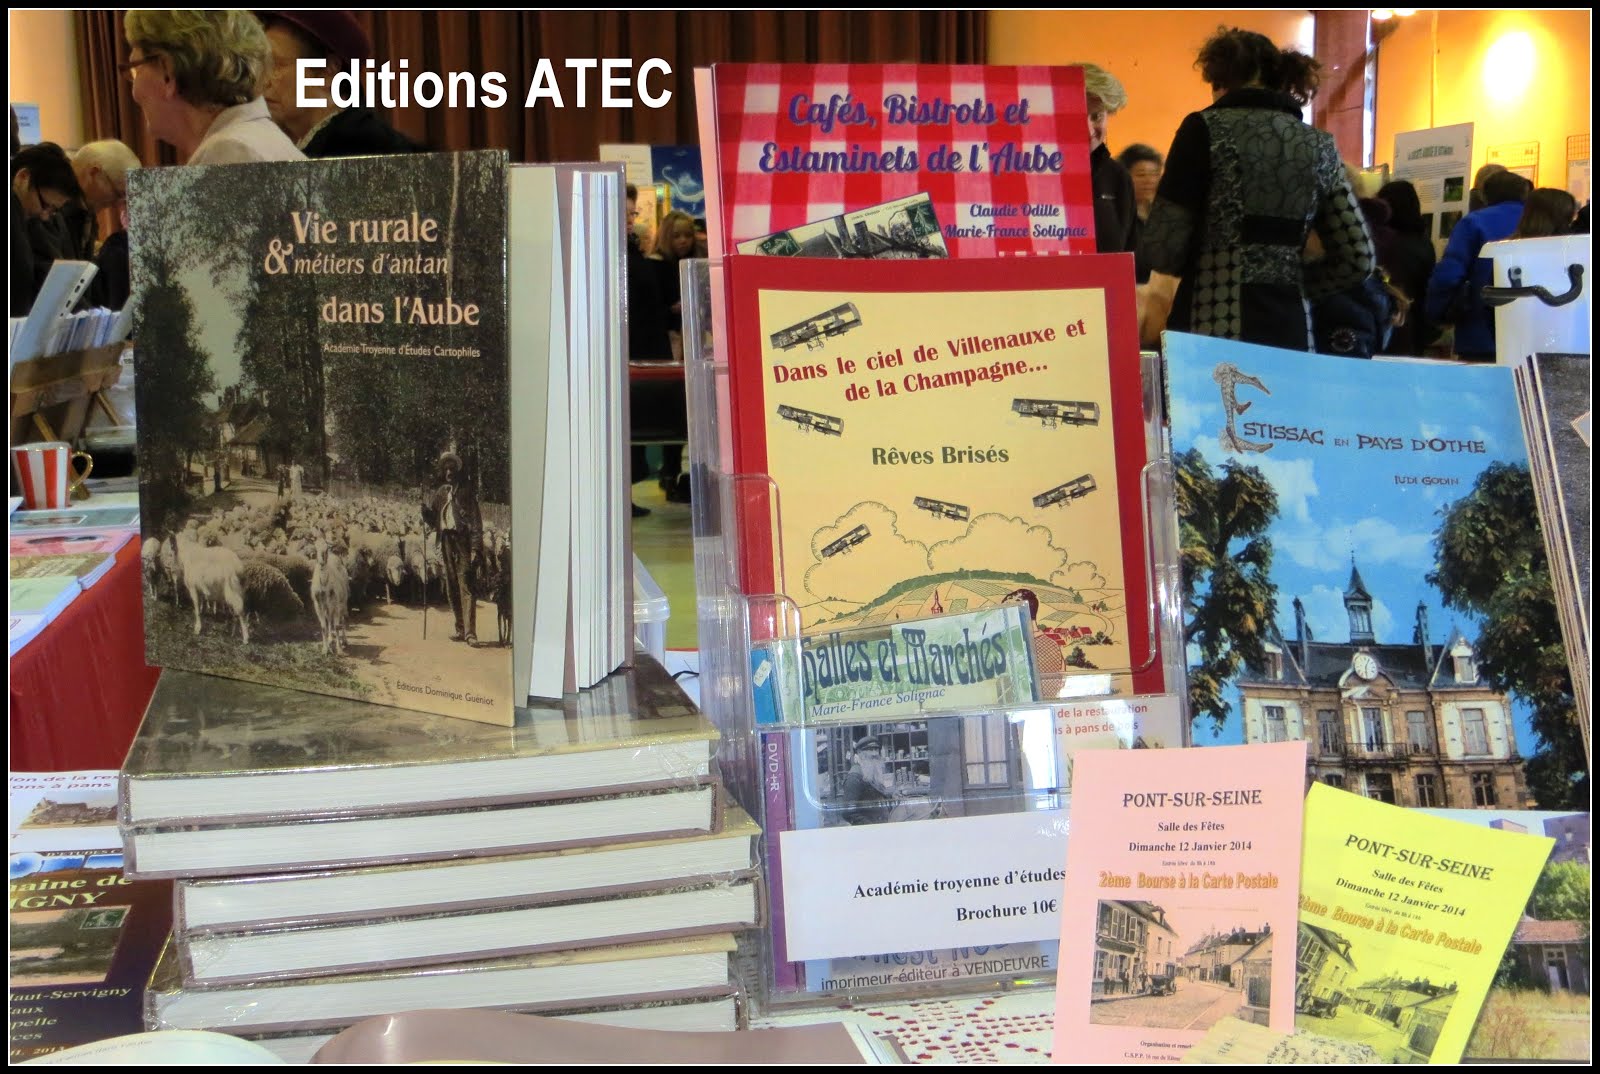 Procurez-vous les Brochures éditions ATEC